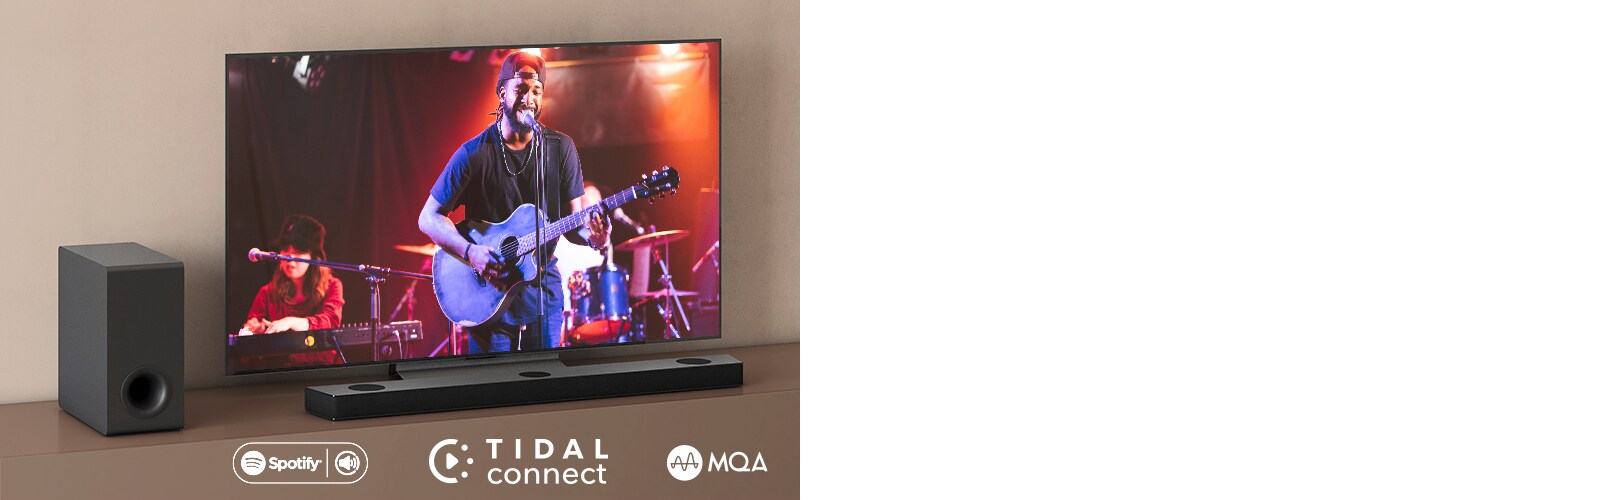 LG televizor nalazi se na smeđoj polici, LG Sound Bar S95QR nalazi se ispred televizora. Niskofrekvencijski zvučnik smješten je s lijeve strane televizora. Na televizoru se prikazuje scena koncerata. Oznaka NOVO prikazana je u gornjem lijevom kutu.